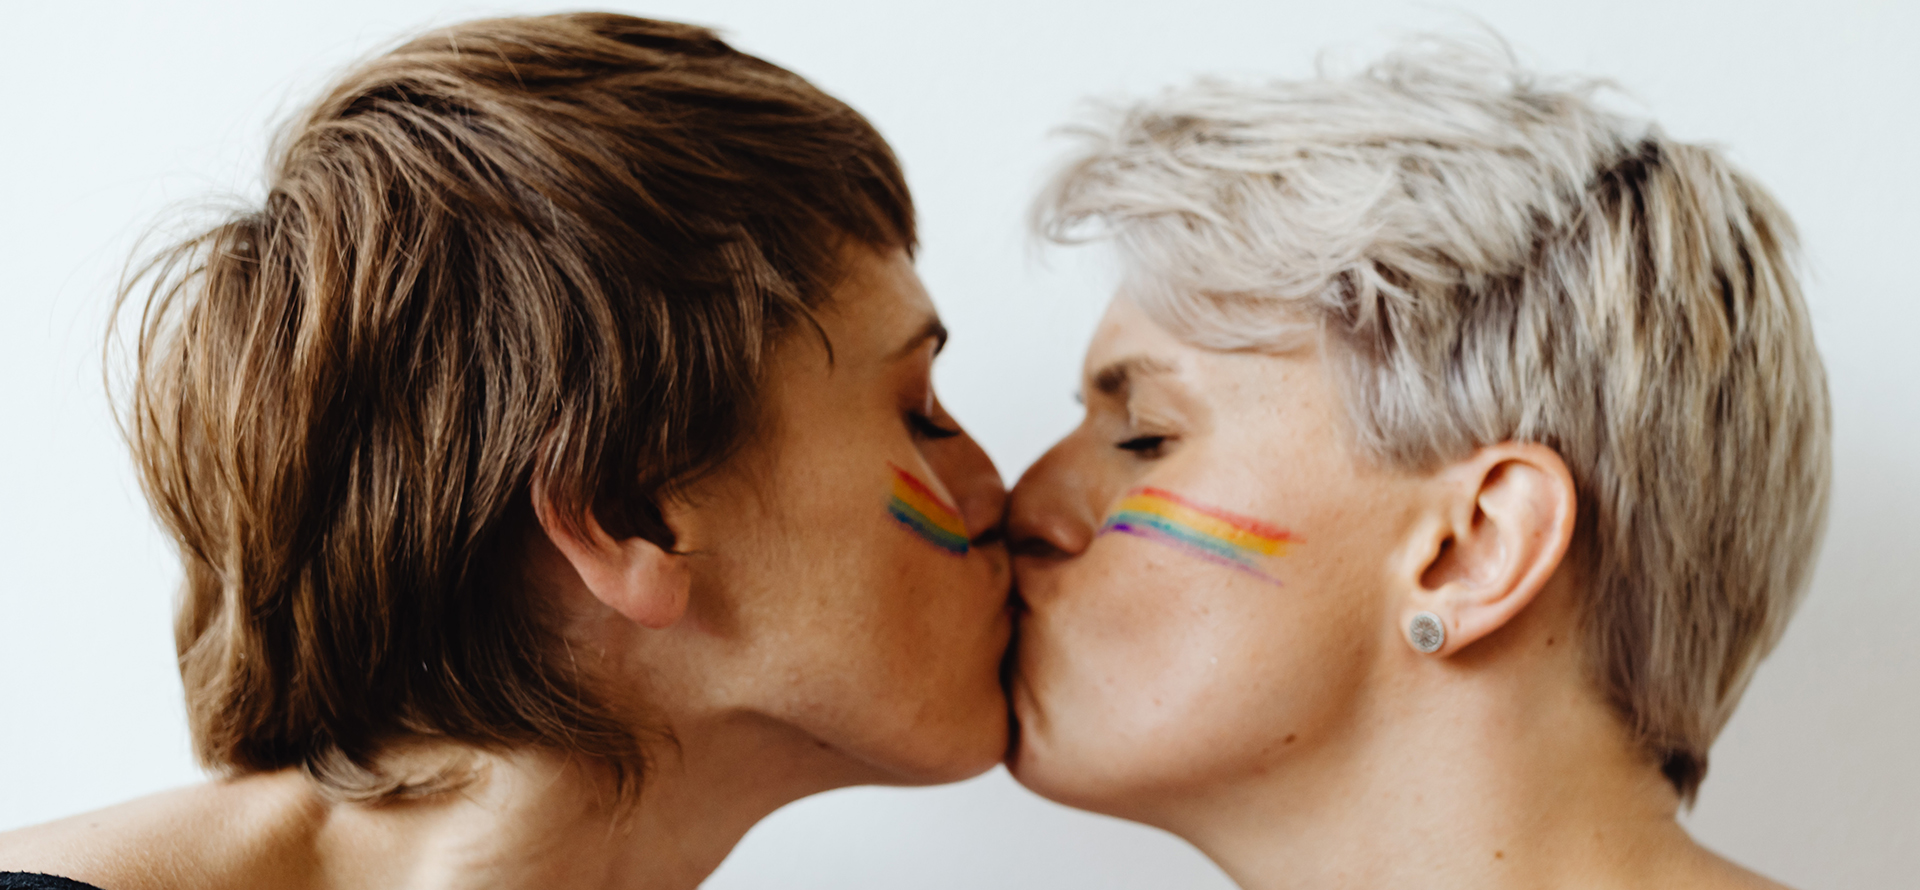 Una coppia di lesbiche che si baciano.